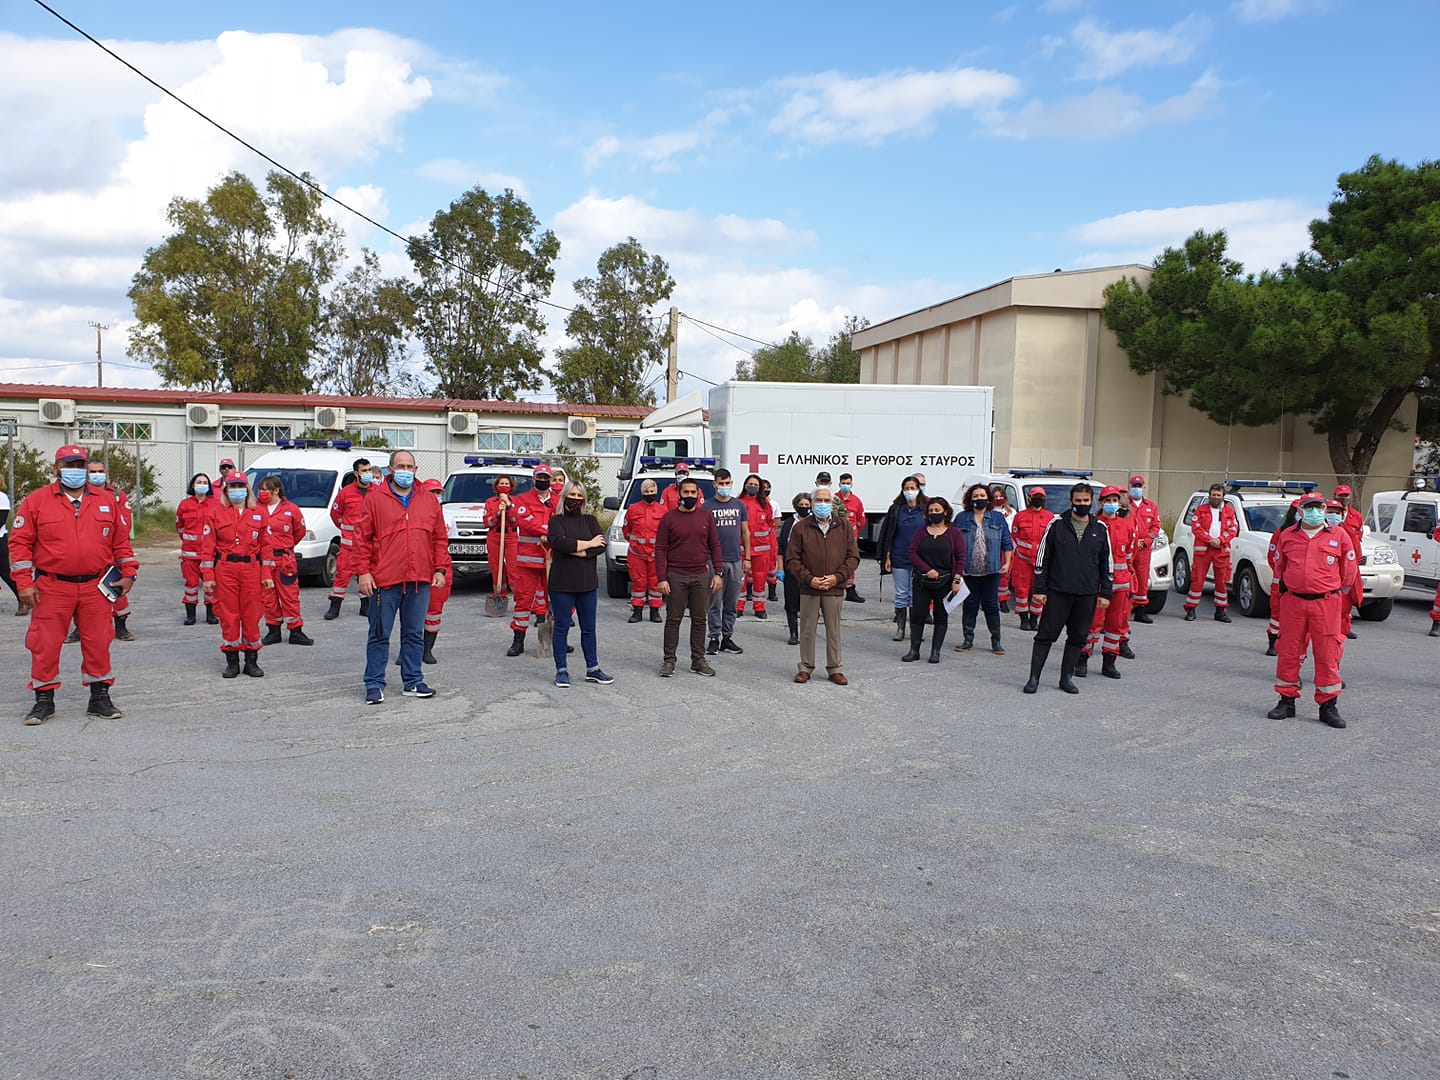 “Οι ακούραστοι εθελοντές του Ερυθρού Σταυρού βρίσκονται από την αρχή στο πλευρό μας”